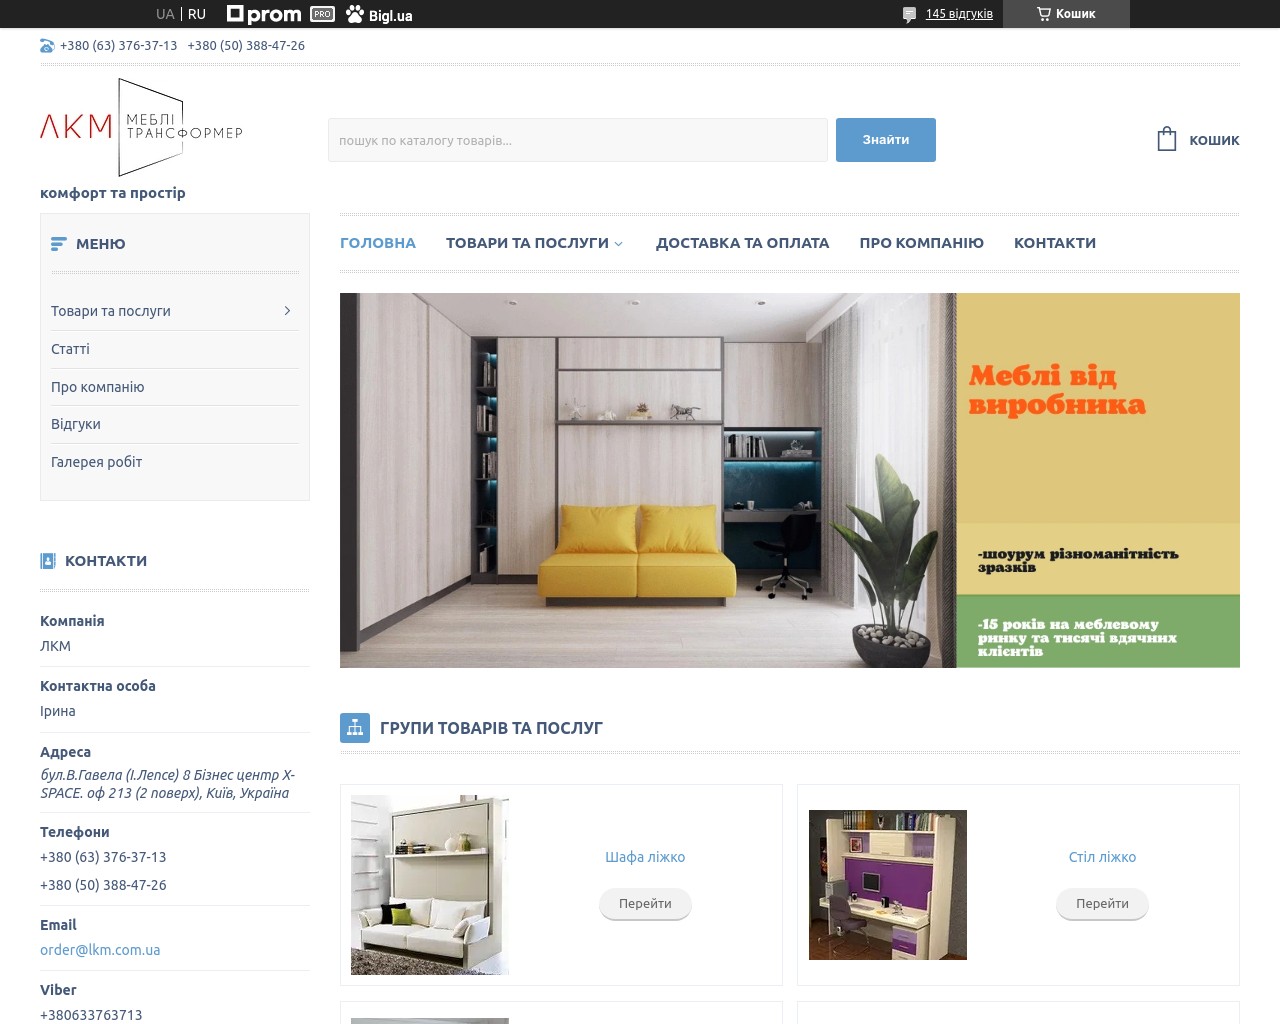 Изображение скриншота сайта - Мебель для дома изготовление и продажа